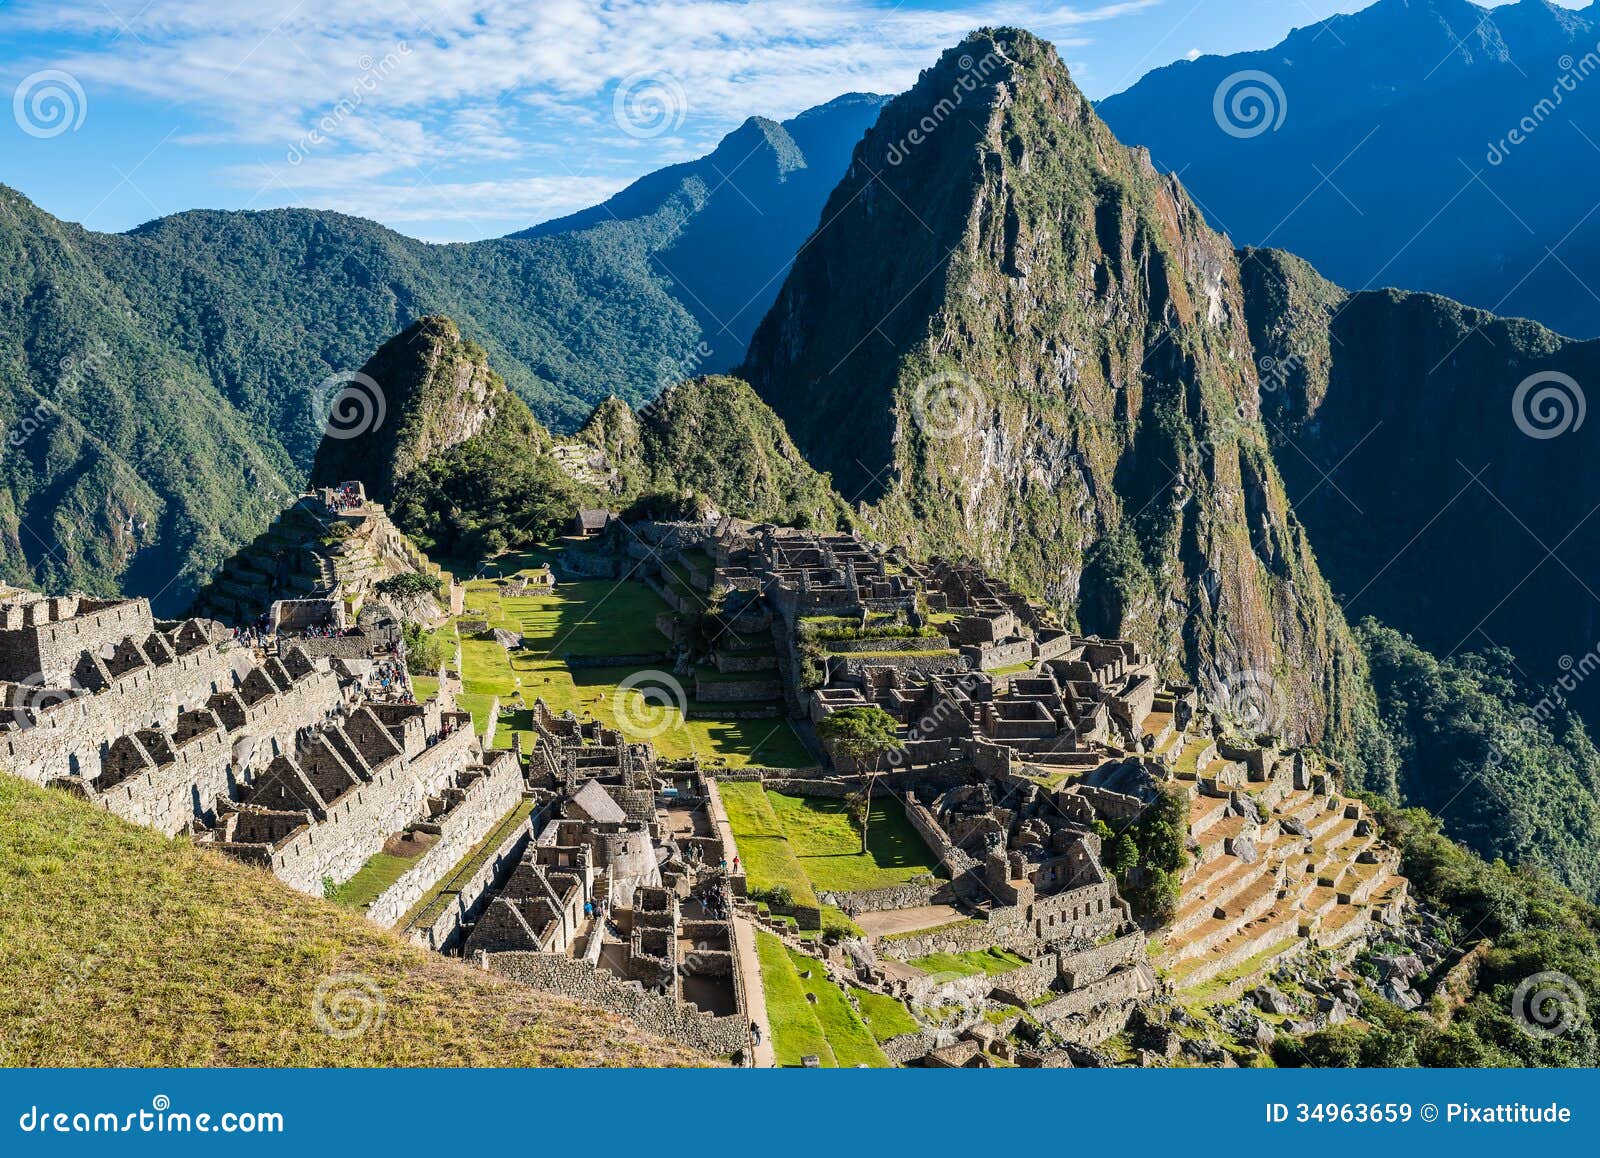 machu picchu ruins peruvian andes cuzco peru